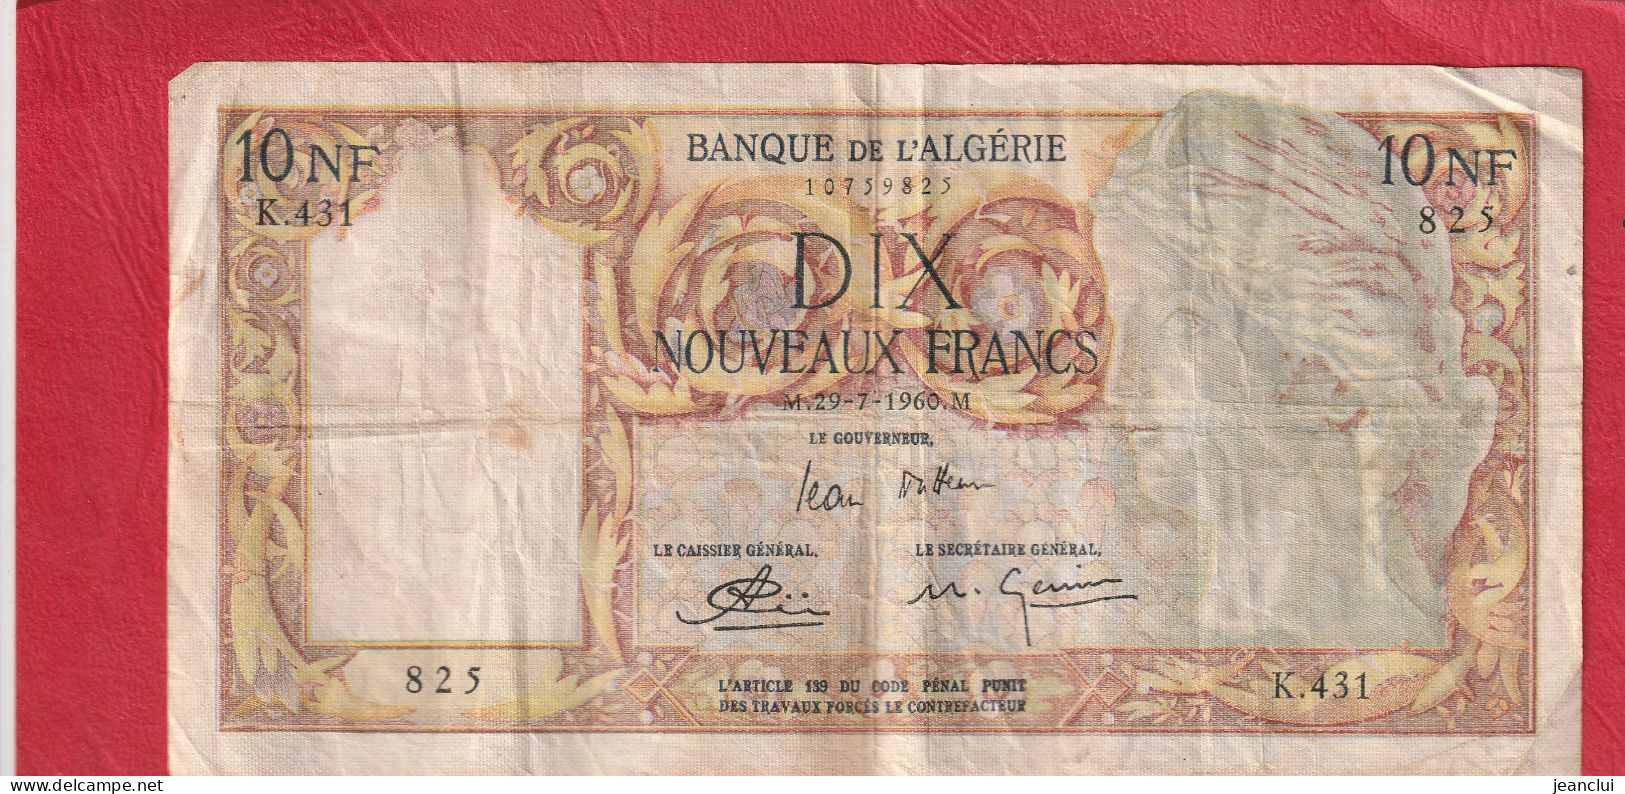 BANQUE DE L'ALGERIE  .  10 NOUVEAUX FRANCS  .  29-7-1960  . SERIE K.431  .  N° 825  .  2 SCANNES  .  BILLET USITE - Algeria